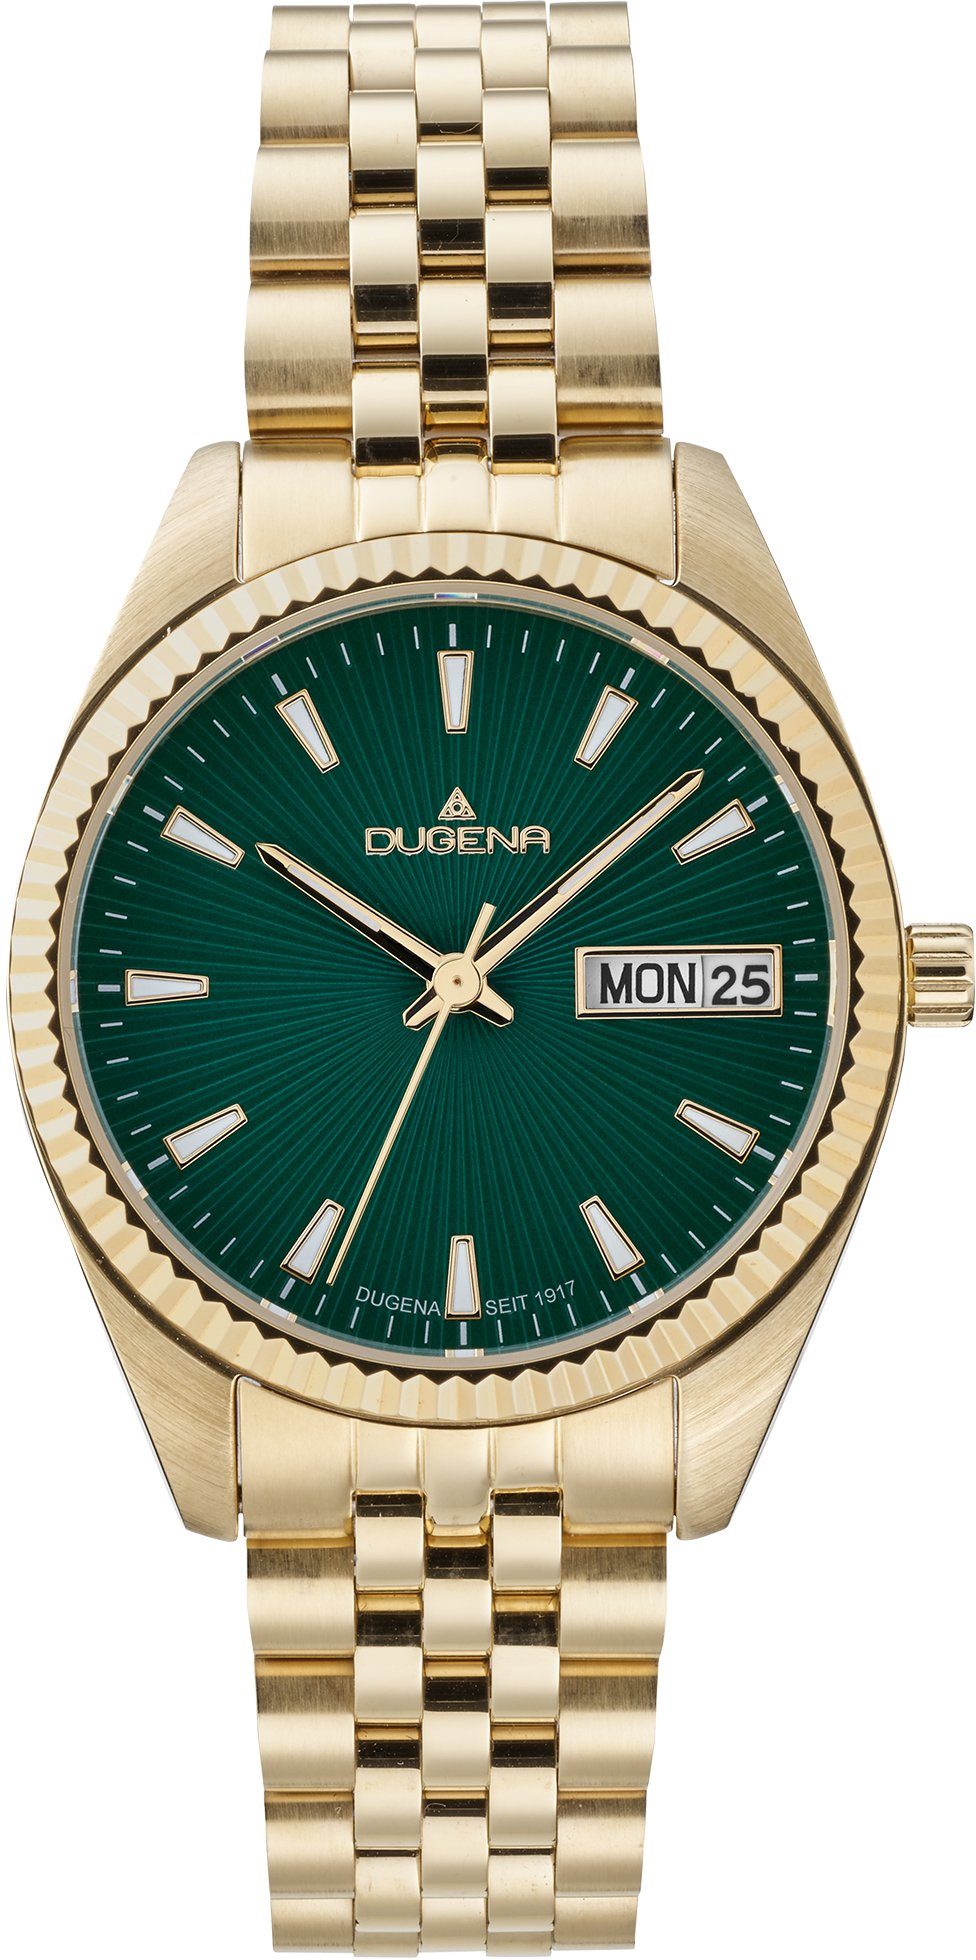 Uhren | Uhren kaufen » Dugena Dugena OTTO online Gold Goldene